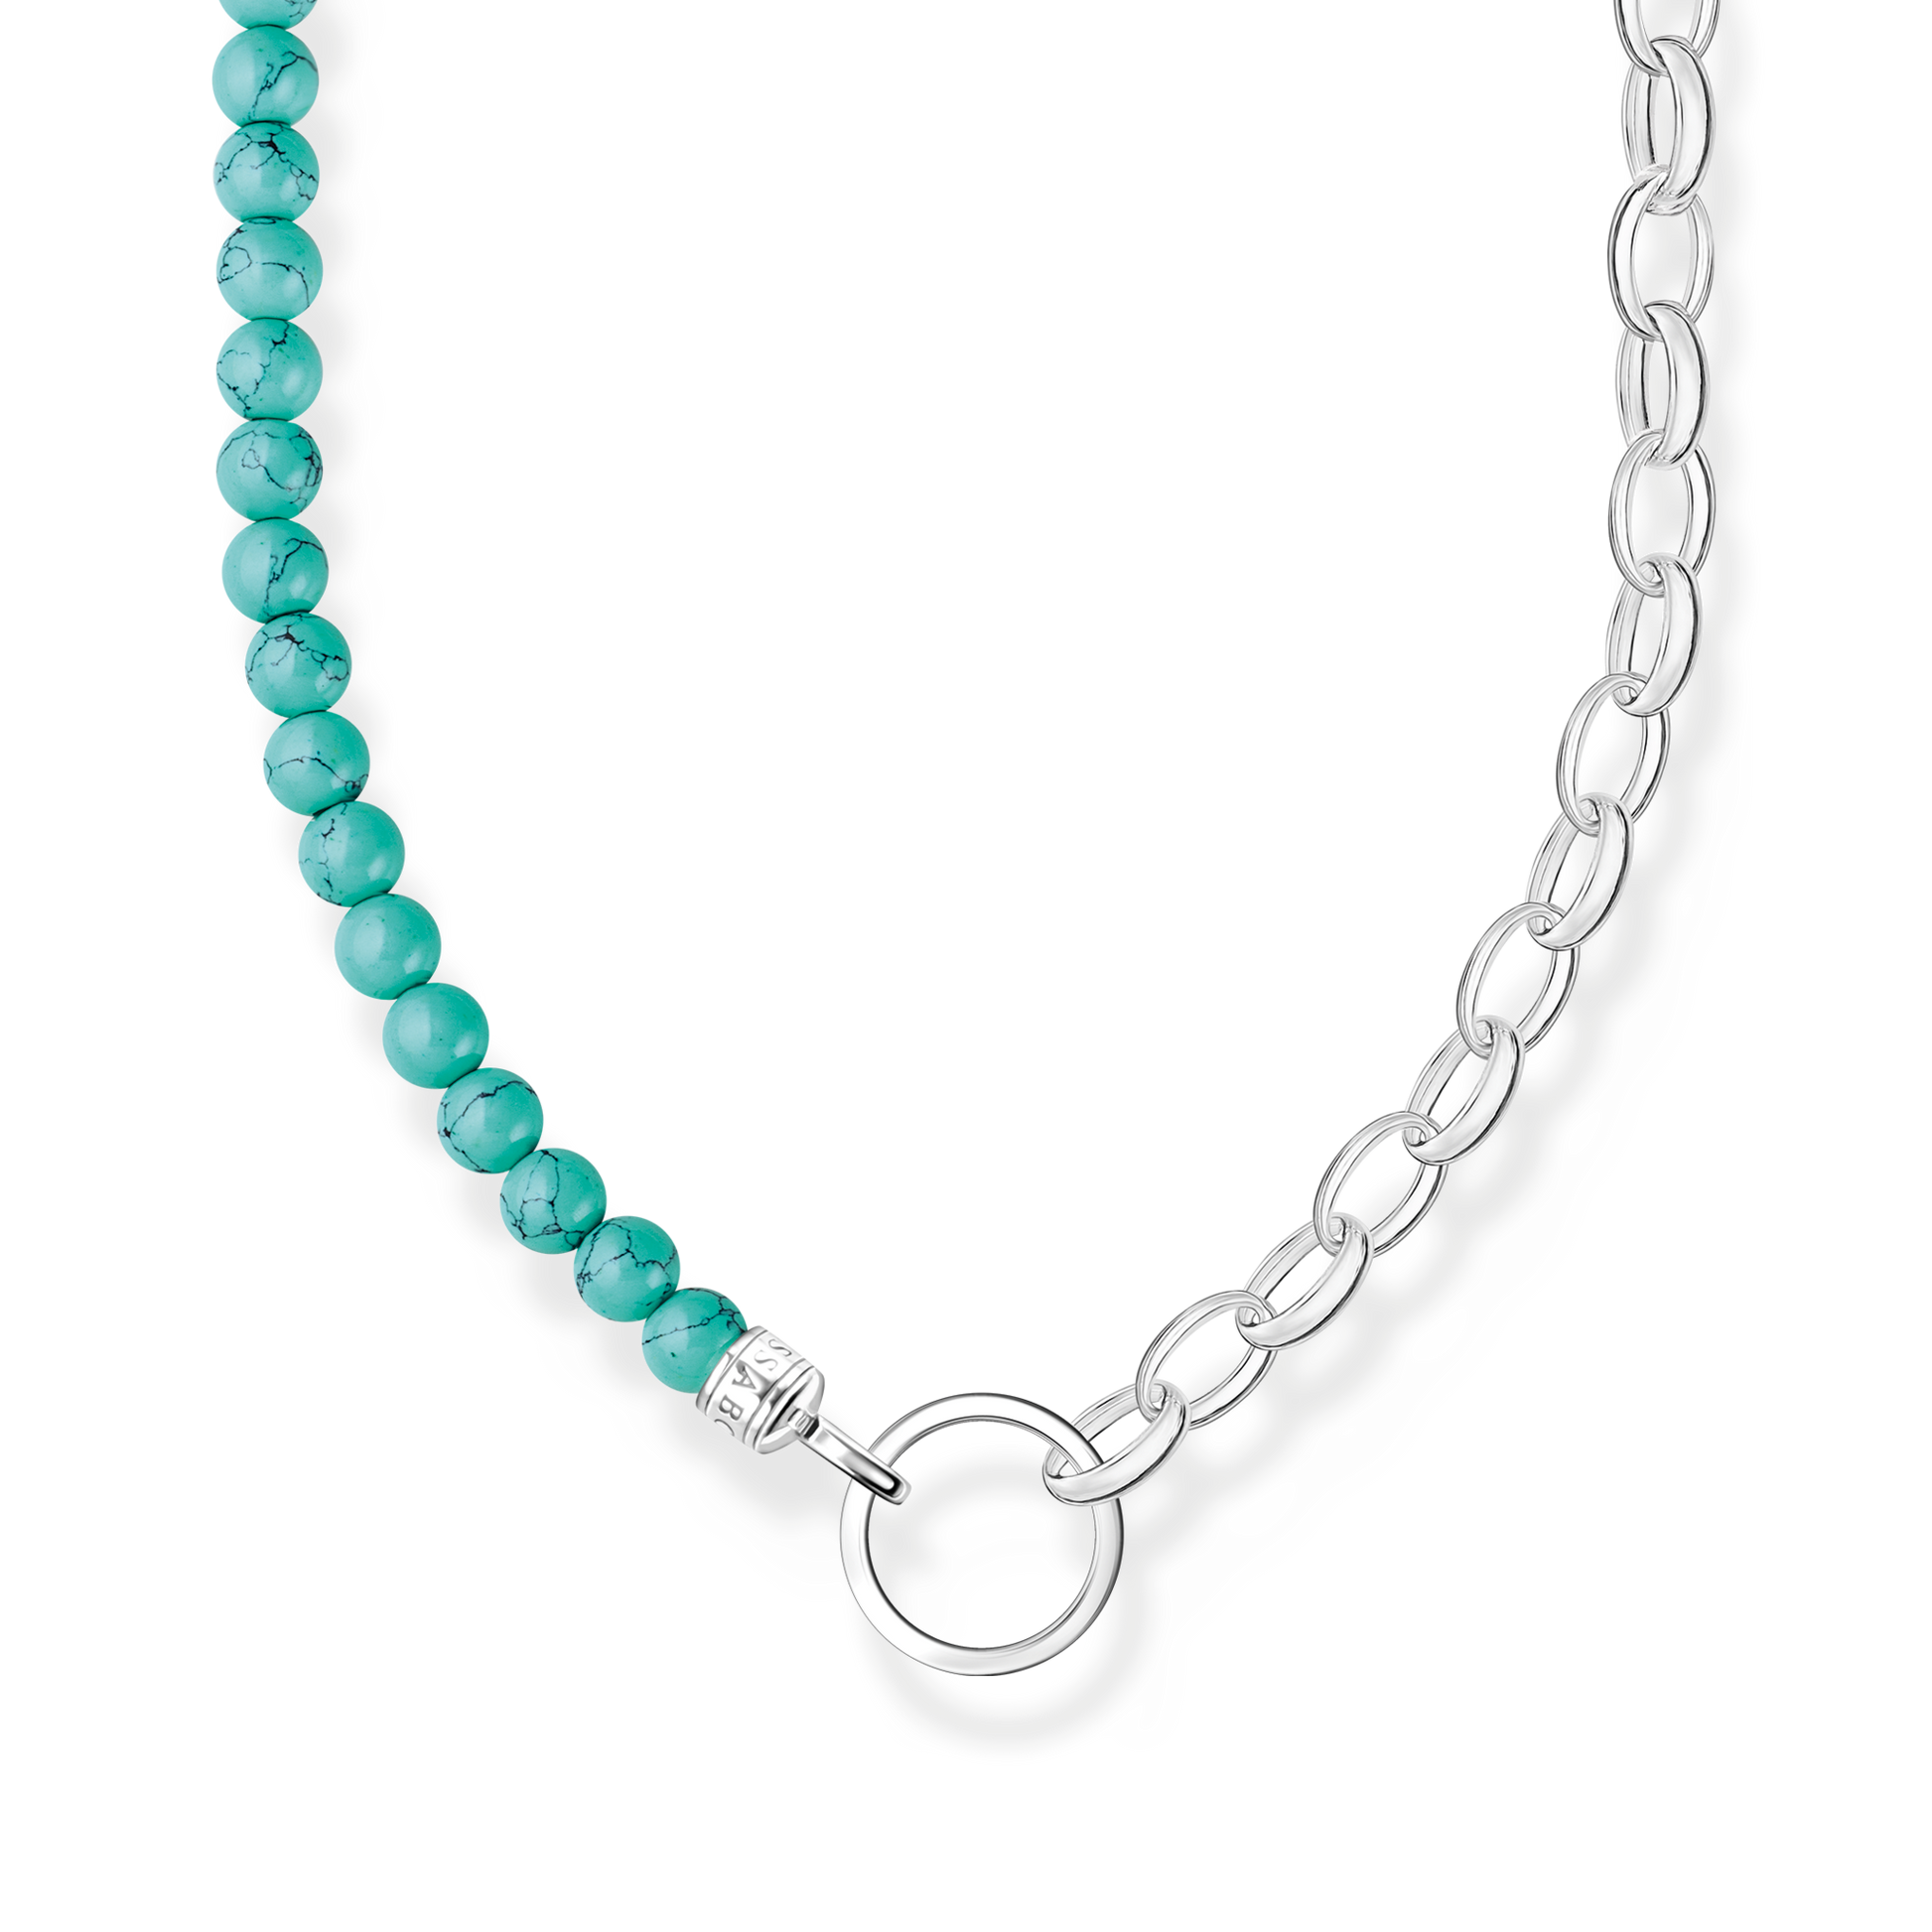 Charm-Kette mit türkisen Beads und Kettengliedern Silber - PERDONA